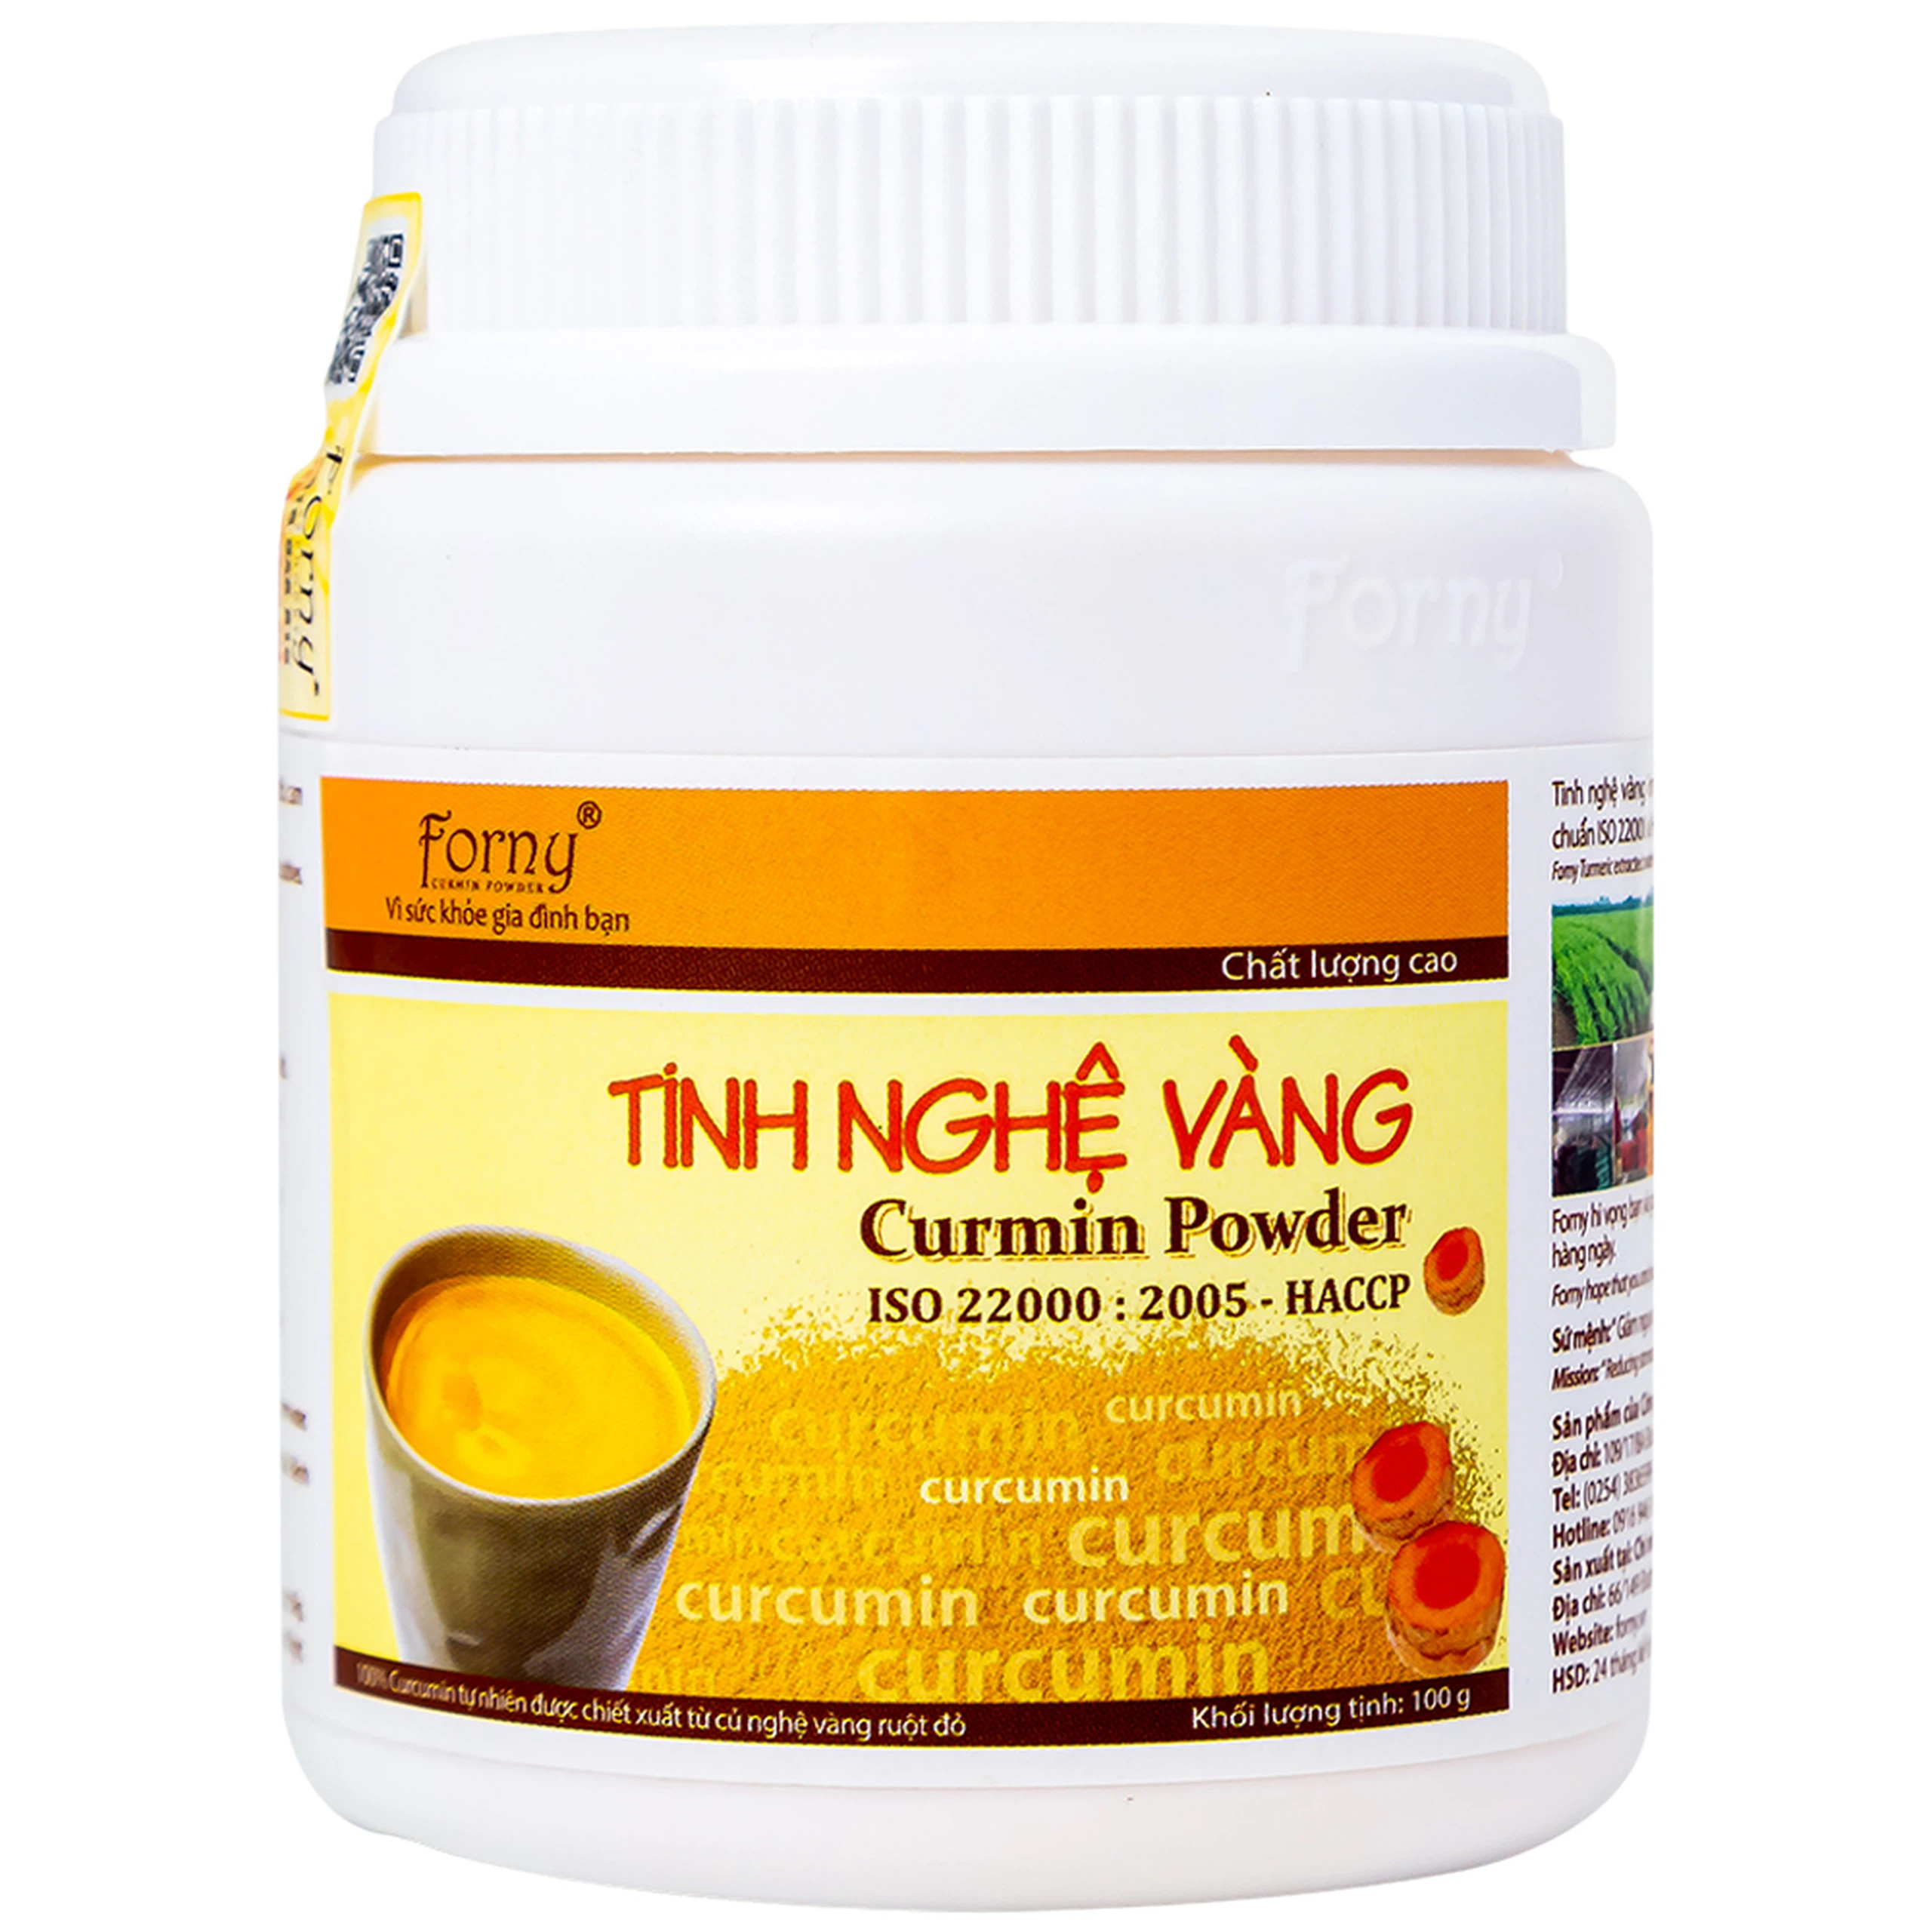 Tinh Nghệ Vàng Curmin Powder Forny bảo vệ và tái tạo niêm mạc dạ dày (100g)